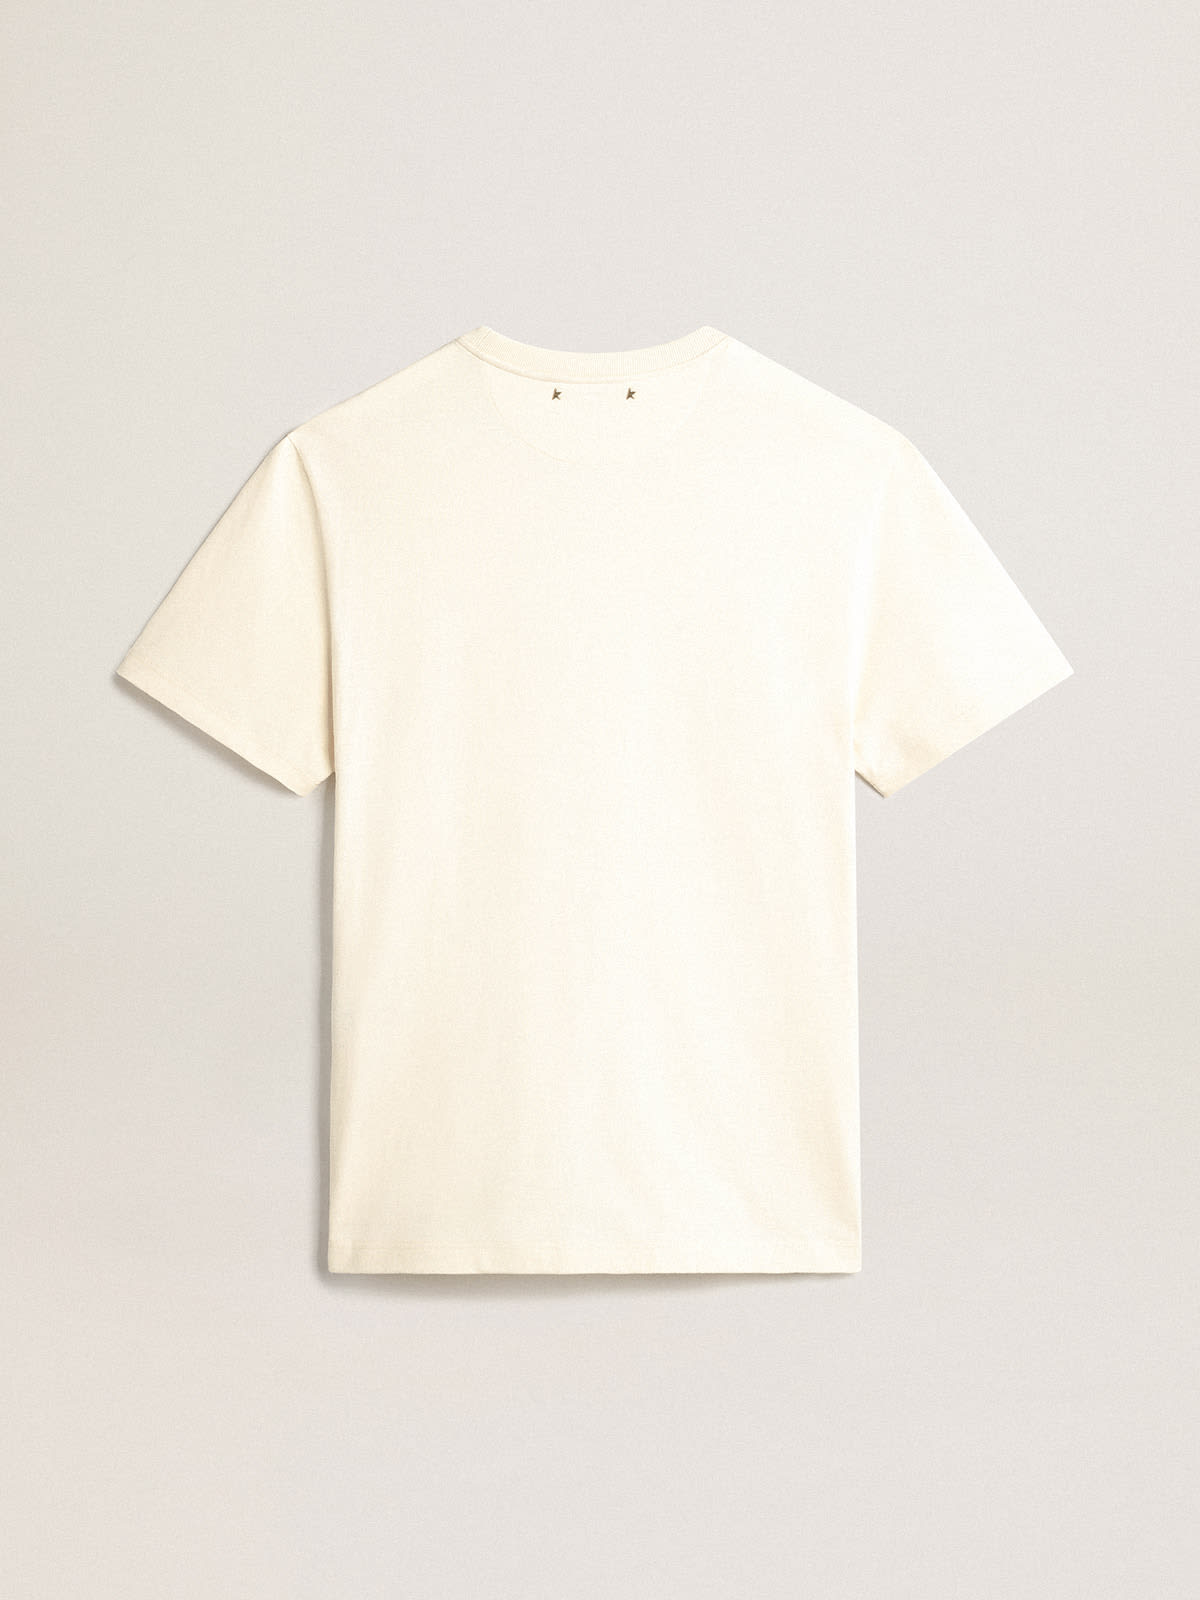 Golden Goose - T-shirt blanc caractéristique homme avec logo CNY in 